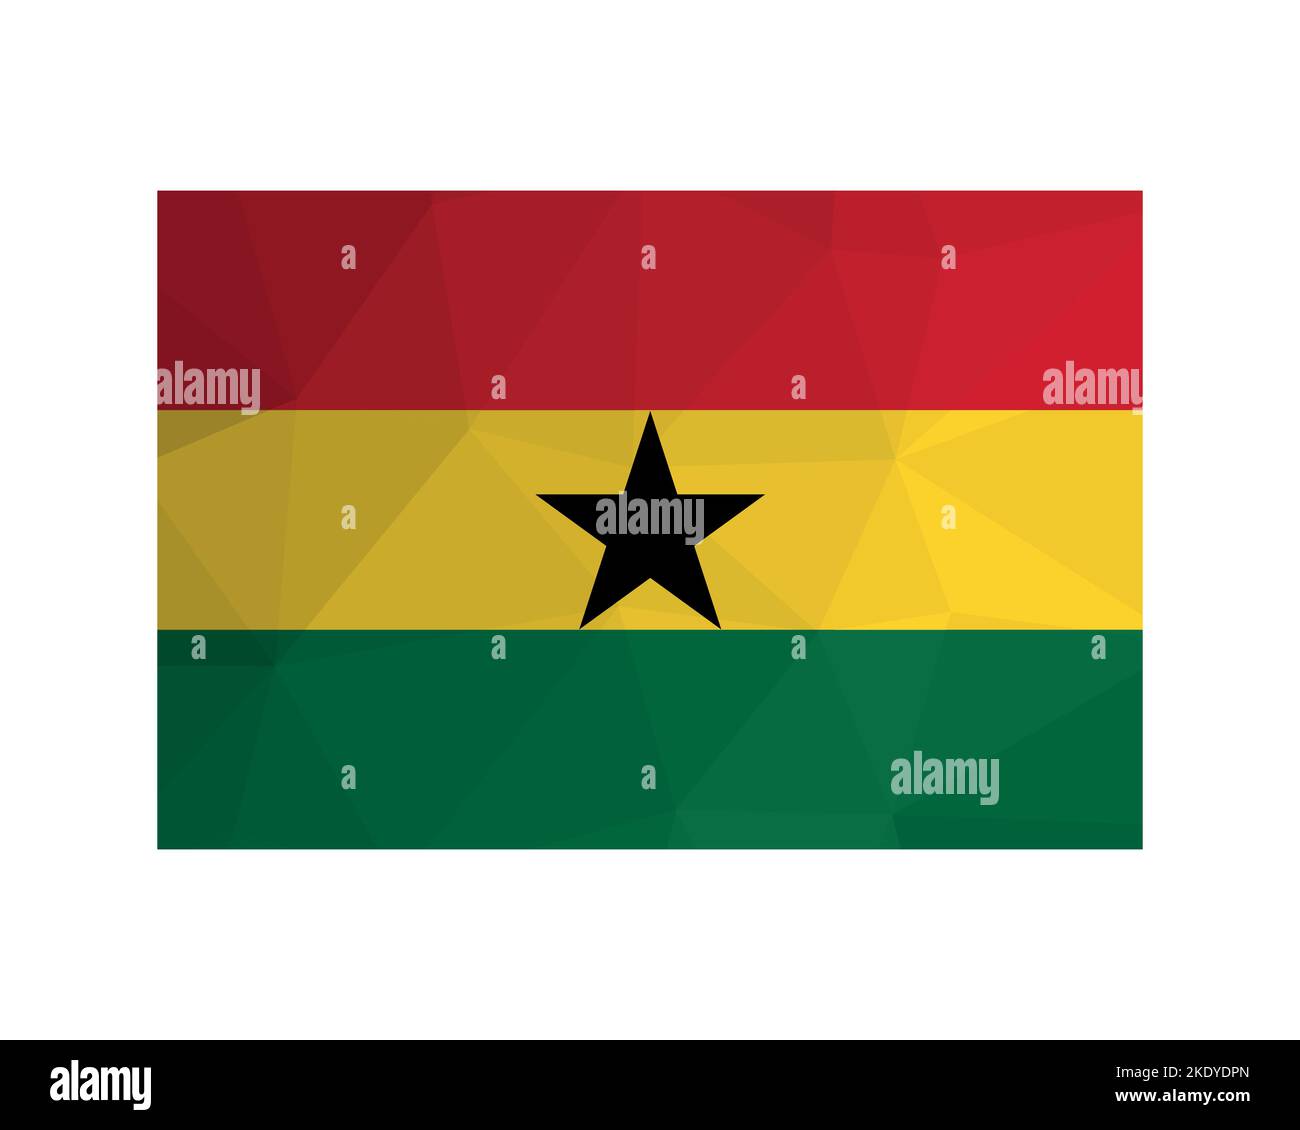 Illustration vectorielle. ensign officiel du Ghana. Drapeau national avec rayures rouges, jaunes, vertes et étoile noire. Design créatif en polyester bas avec tr Illustration de Vecteur